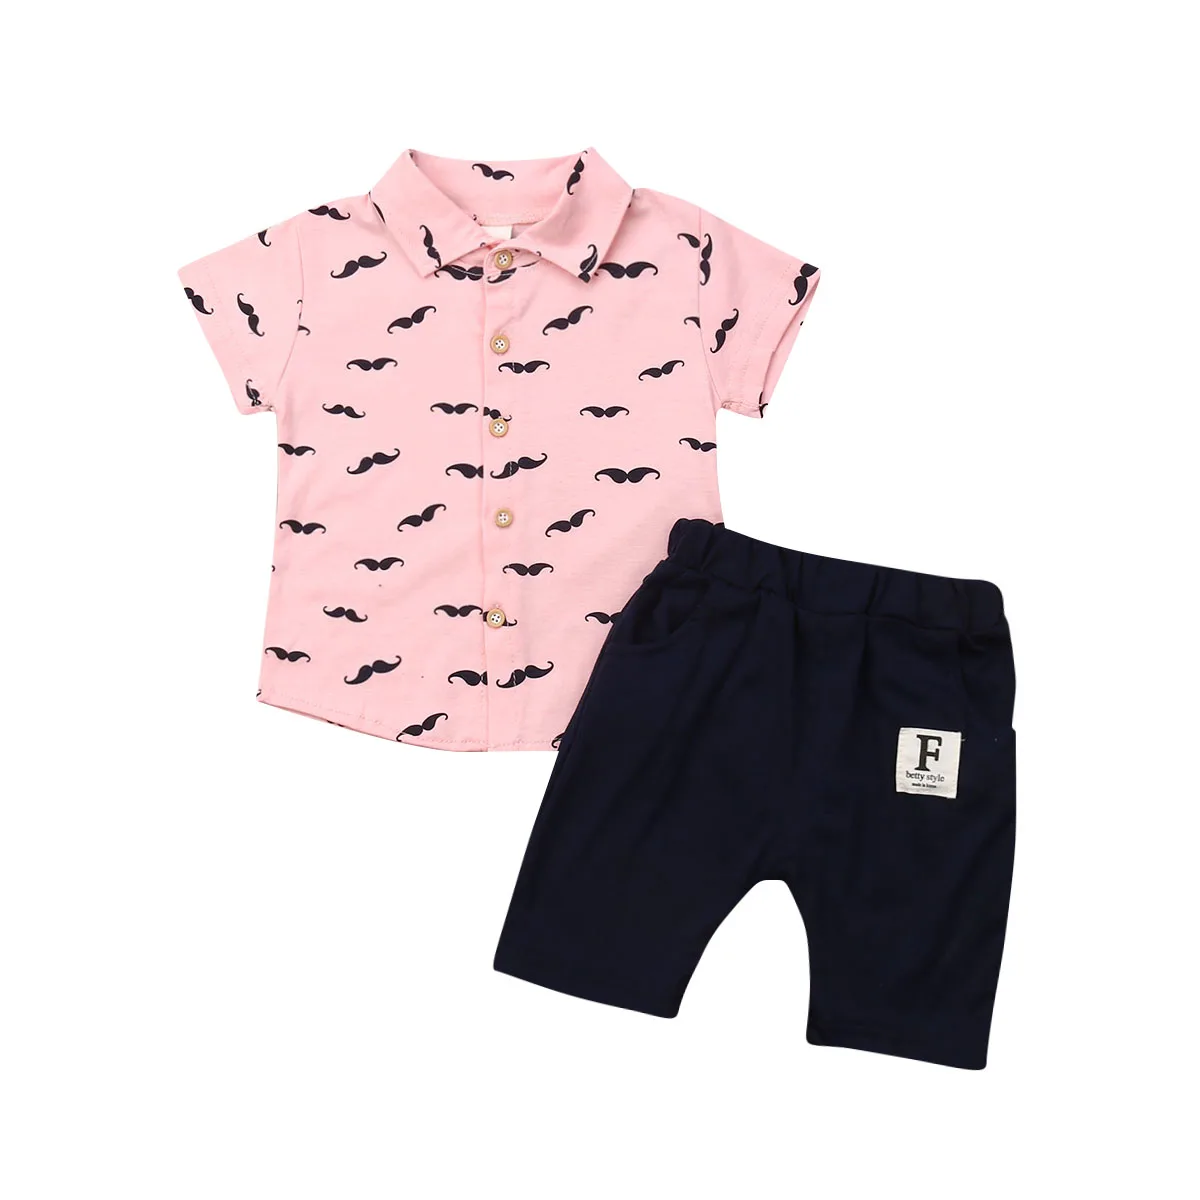 Г. Летняя одежда для малышей комплекты из 2 предметов Одежда для маленьких джентльменов для маленьких мальчиков Комплекты с короткими рукавами, футболка Топ+ штаны, шорты От 6 месяцев до 5 лет - Цвет: Розовый